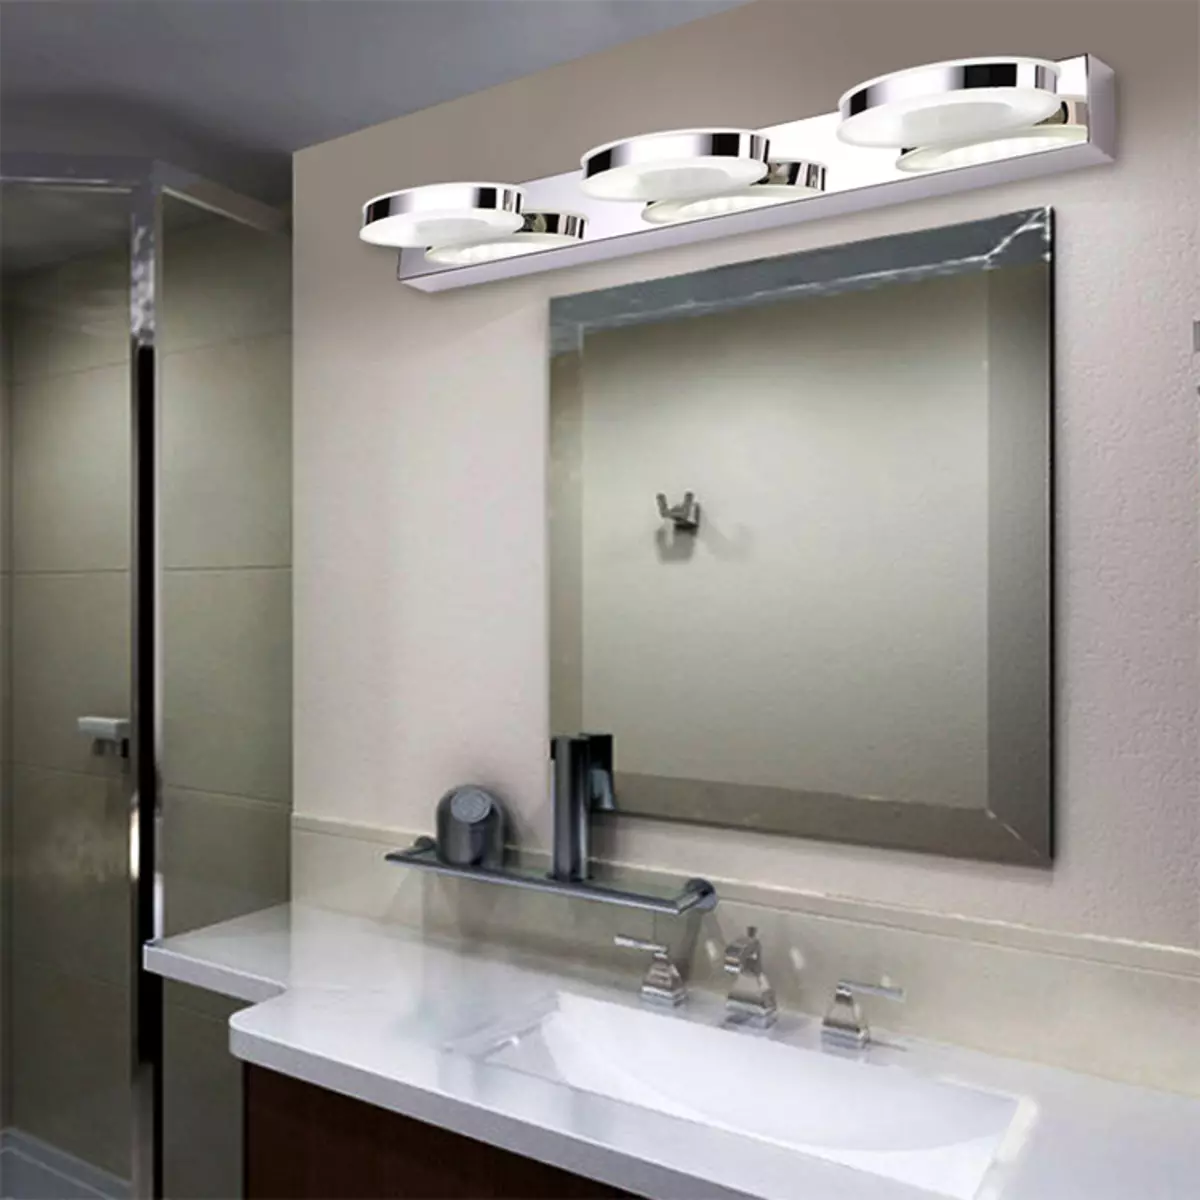 Свет над зеркалом в ванной